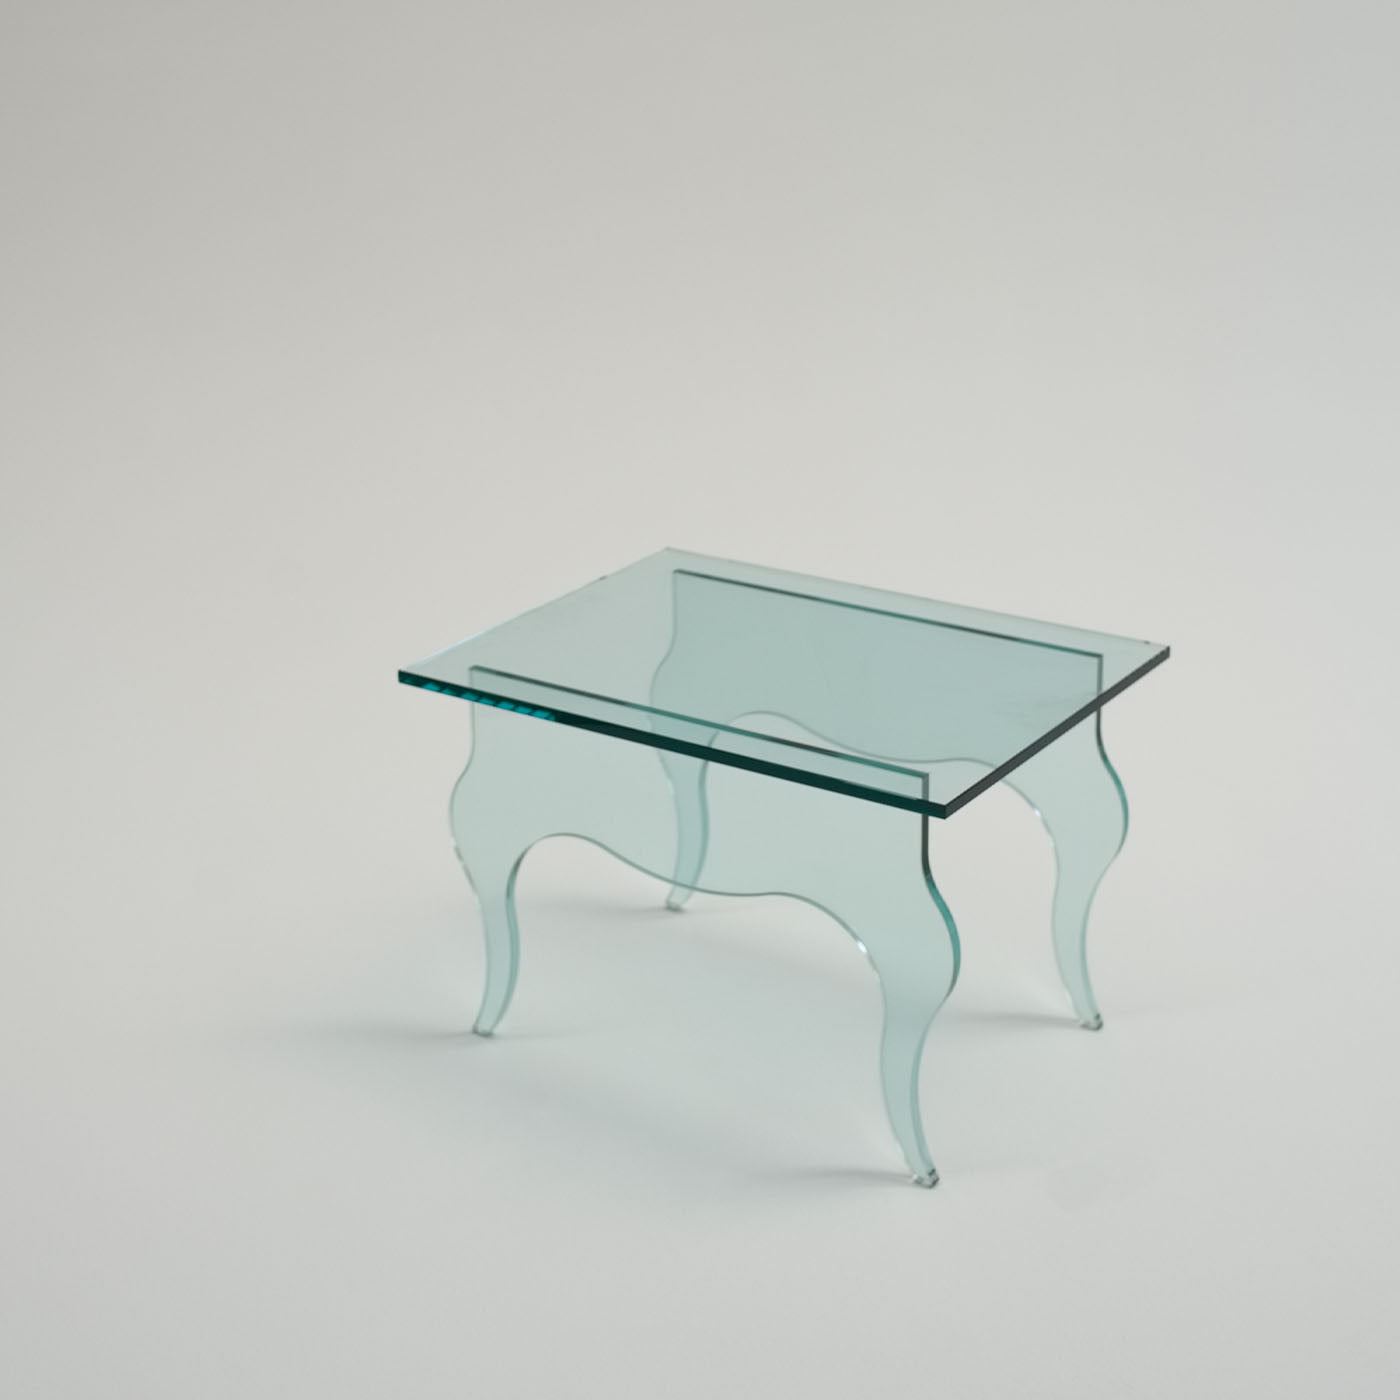 Edmondo Side Table by Andrea Petterini - Alternative view 2